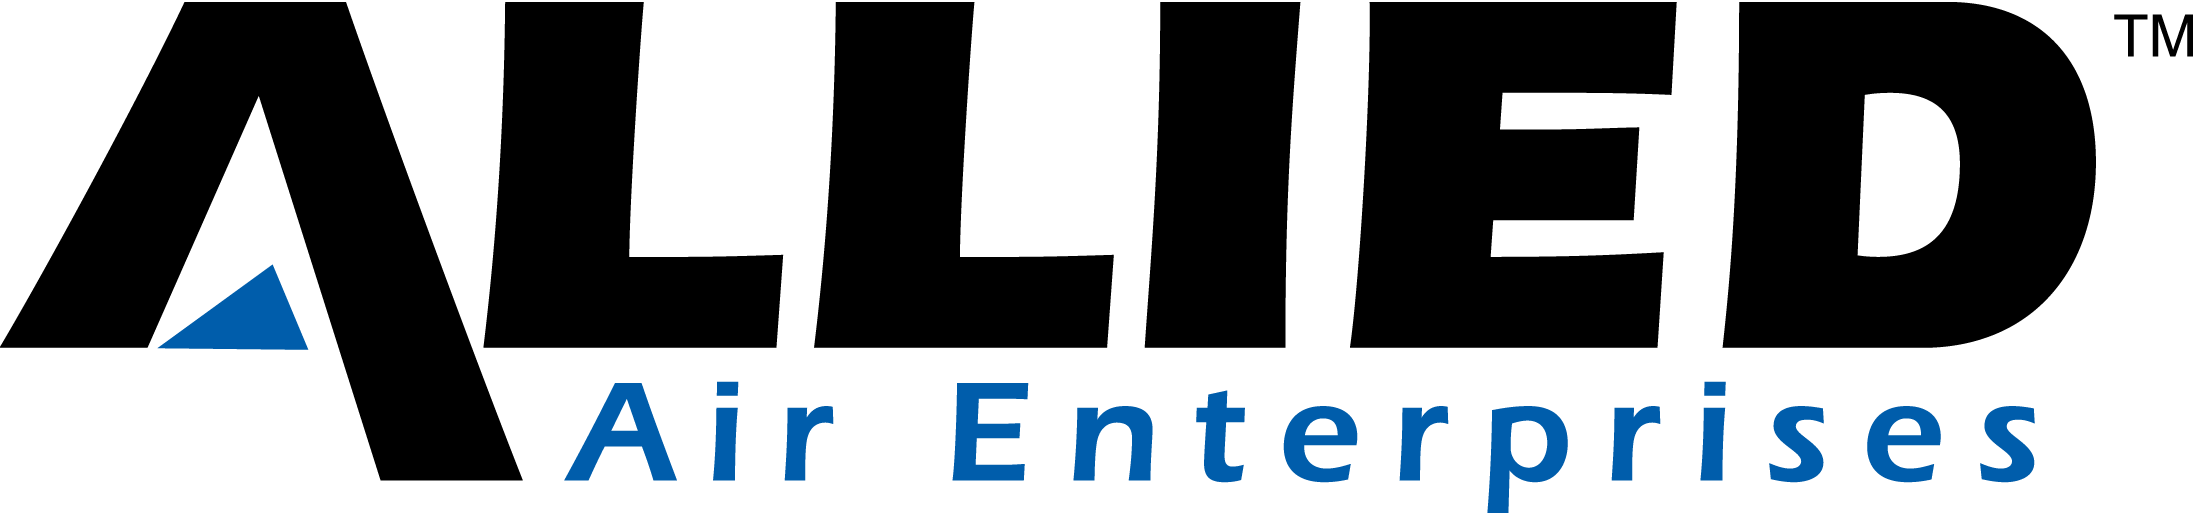 Allied Air Enterprises Logo.